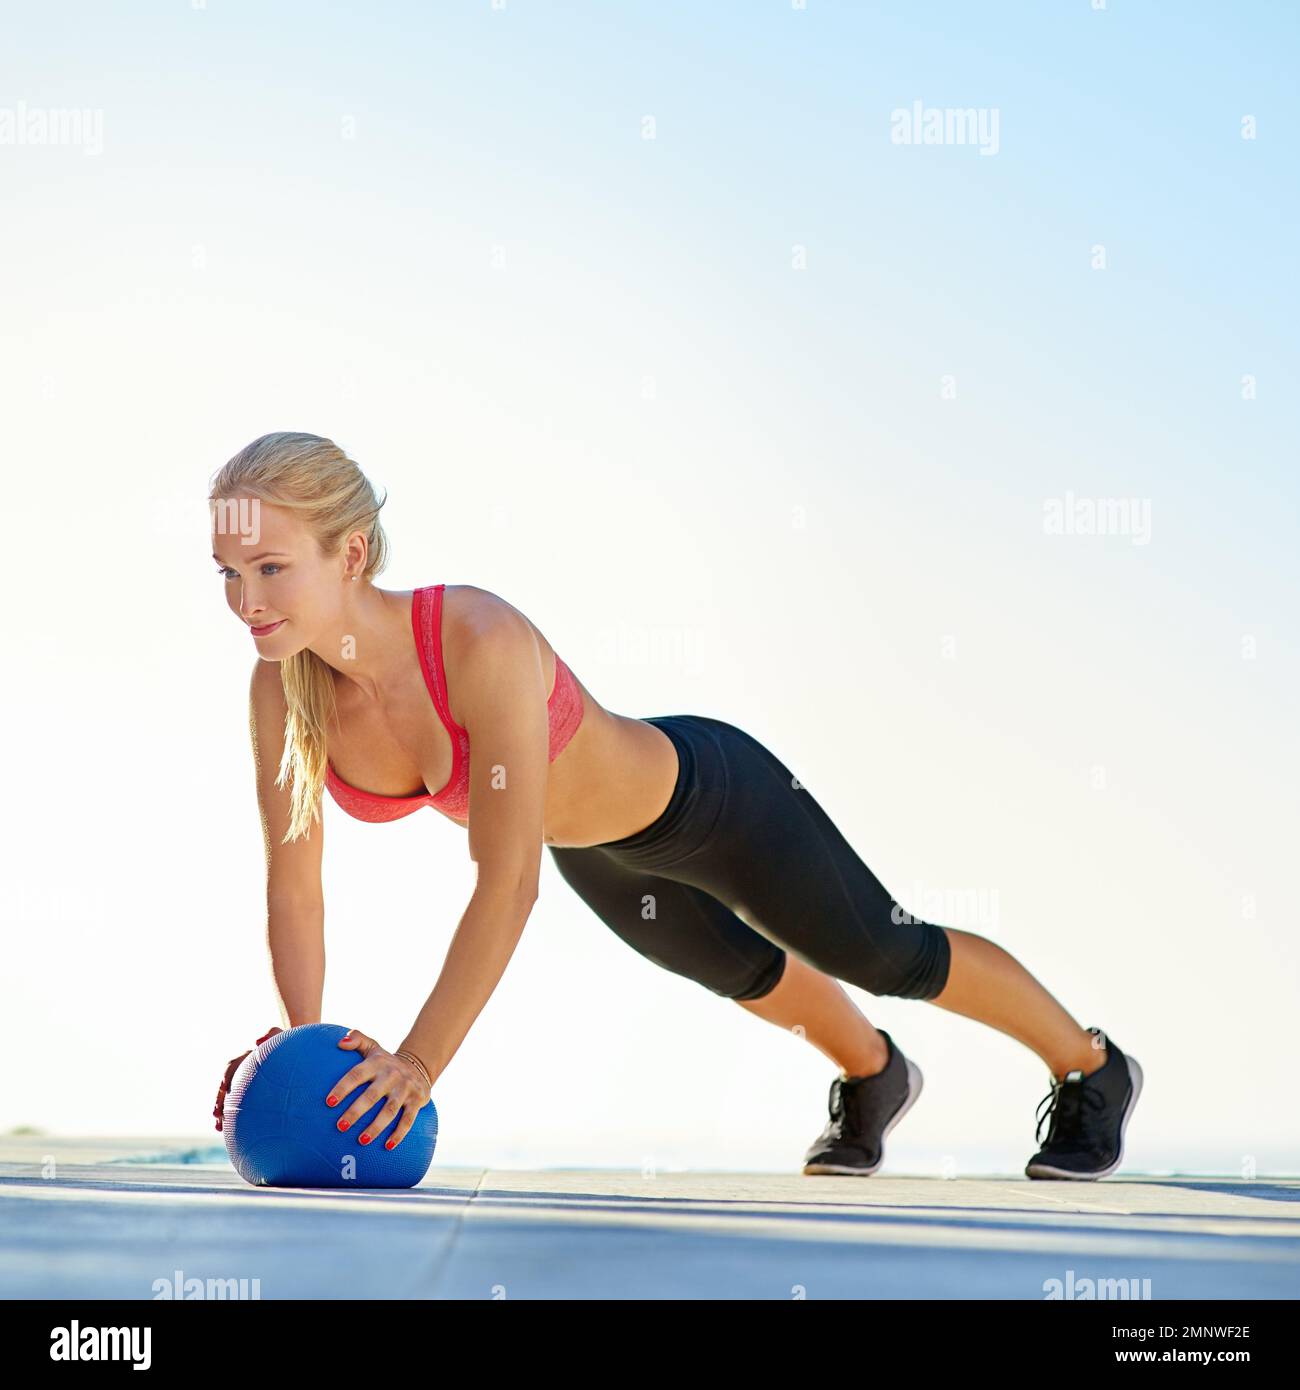 Auf Fitness fokussiert. Die volle Länge einer jungen Frau, die Liegestütze mit einem Medizinball macht. Stockfoto